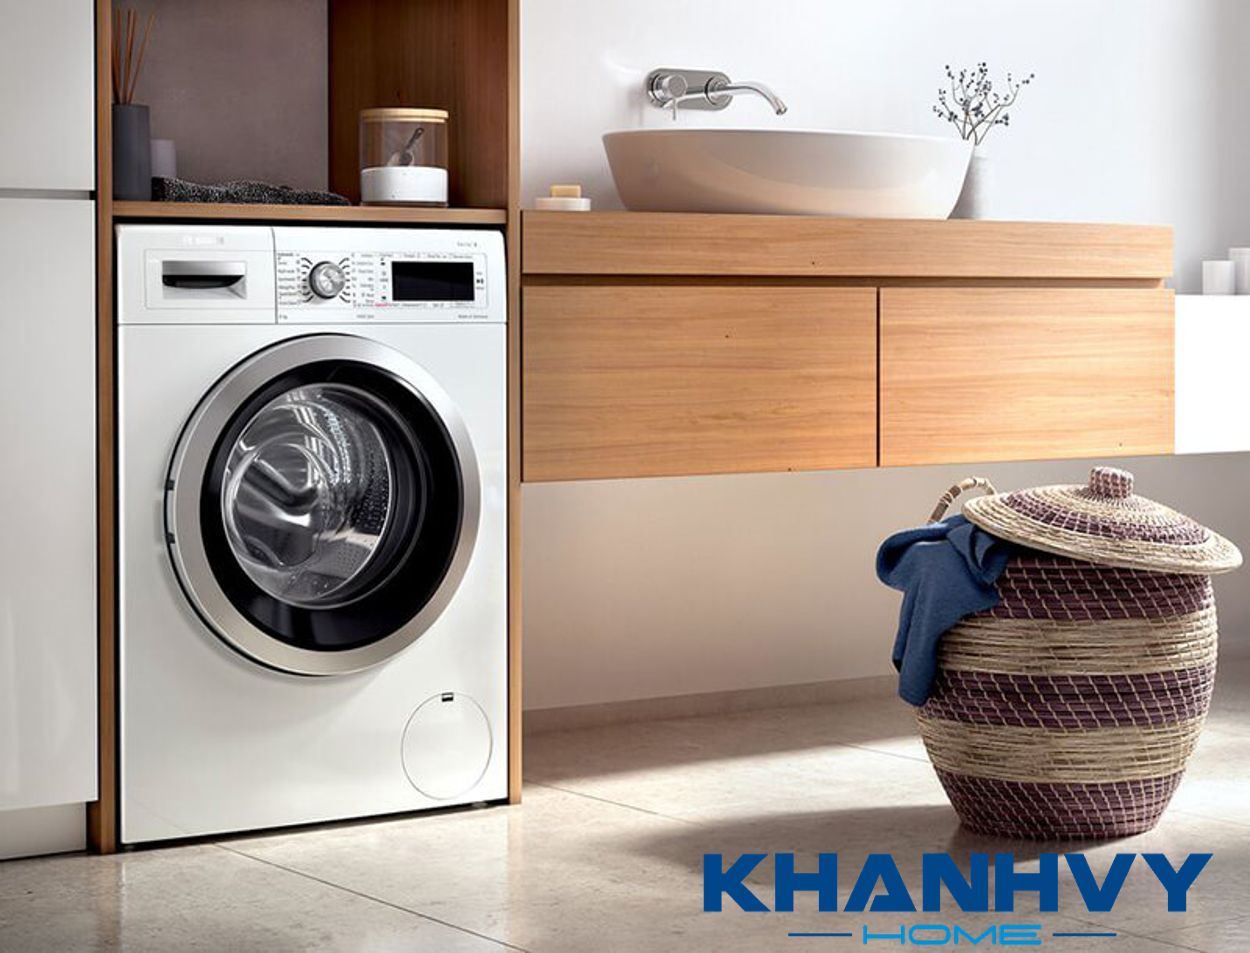 Máy giặt Bosch HMH.WAW28480SG sở hữu thiết kế sang trọng và nhỏ gọn, cùng với nhiều công nghệ giặt và tính năng thông minh hàng đầu, giúp giặt sạch và diệt khuẩn áo quần hiệu quả cho gia đình bạn